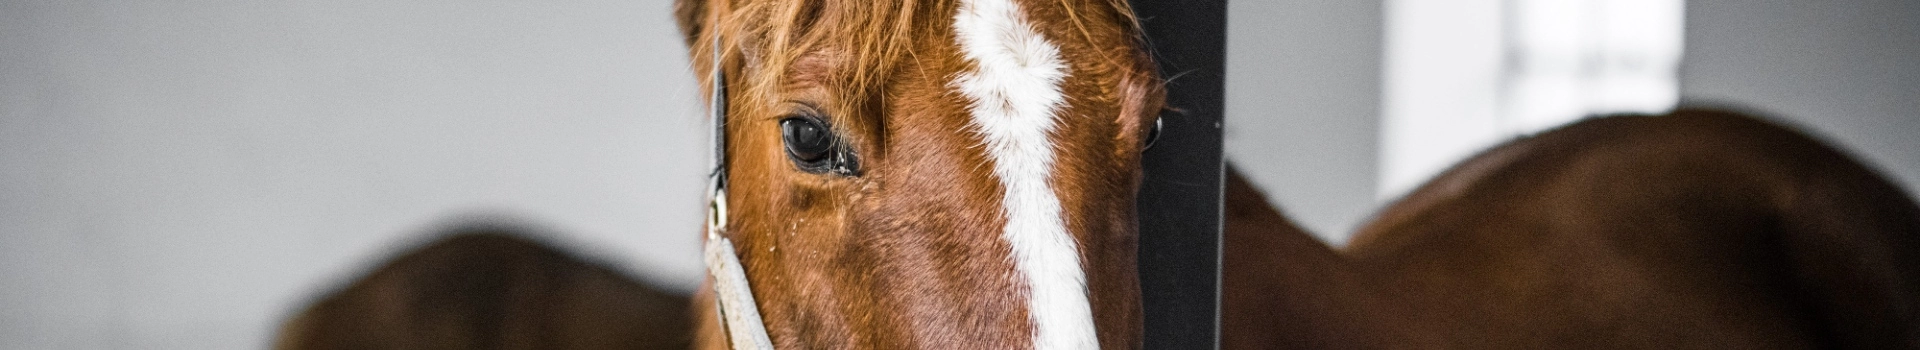 oczy konia